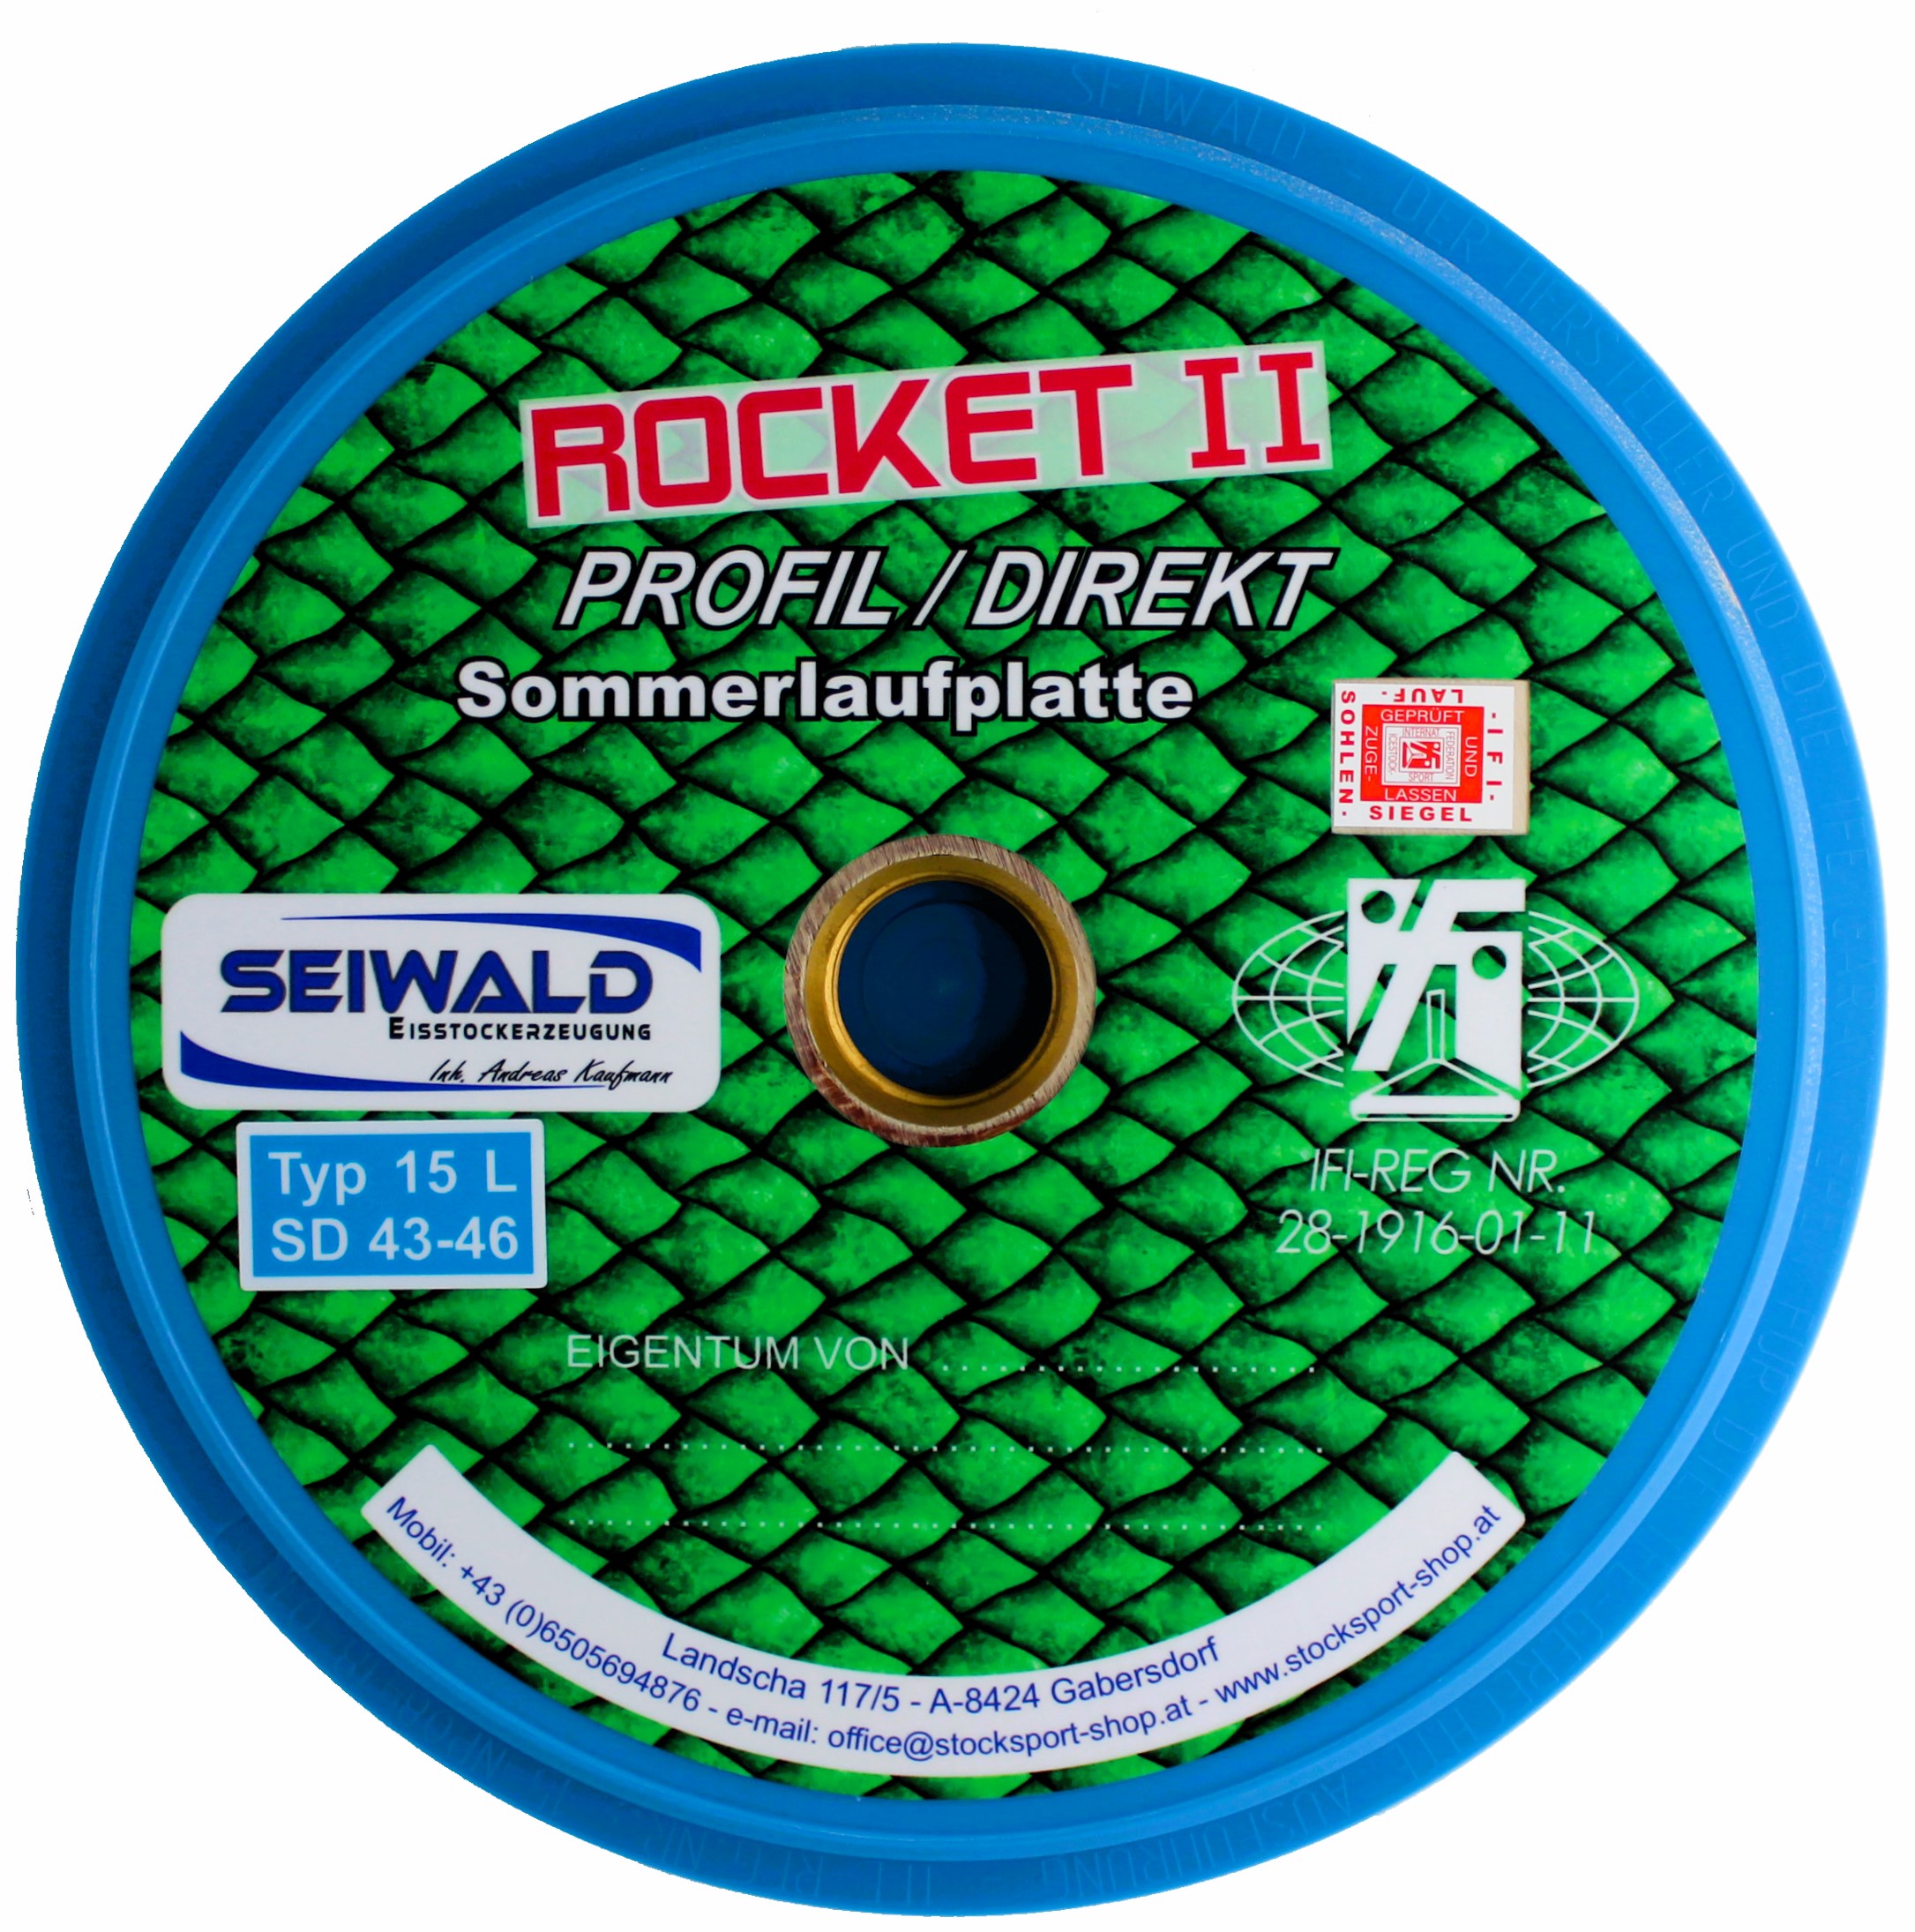 SEIWALD Rocket II Profil / Sehr schnelle Stockplatte